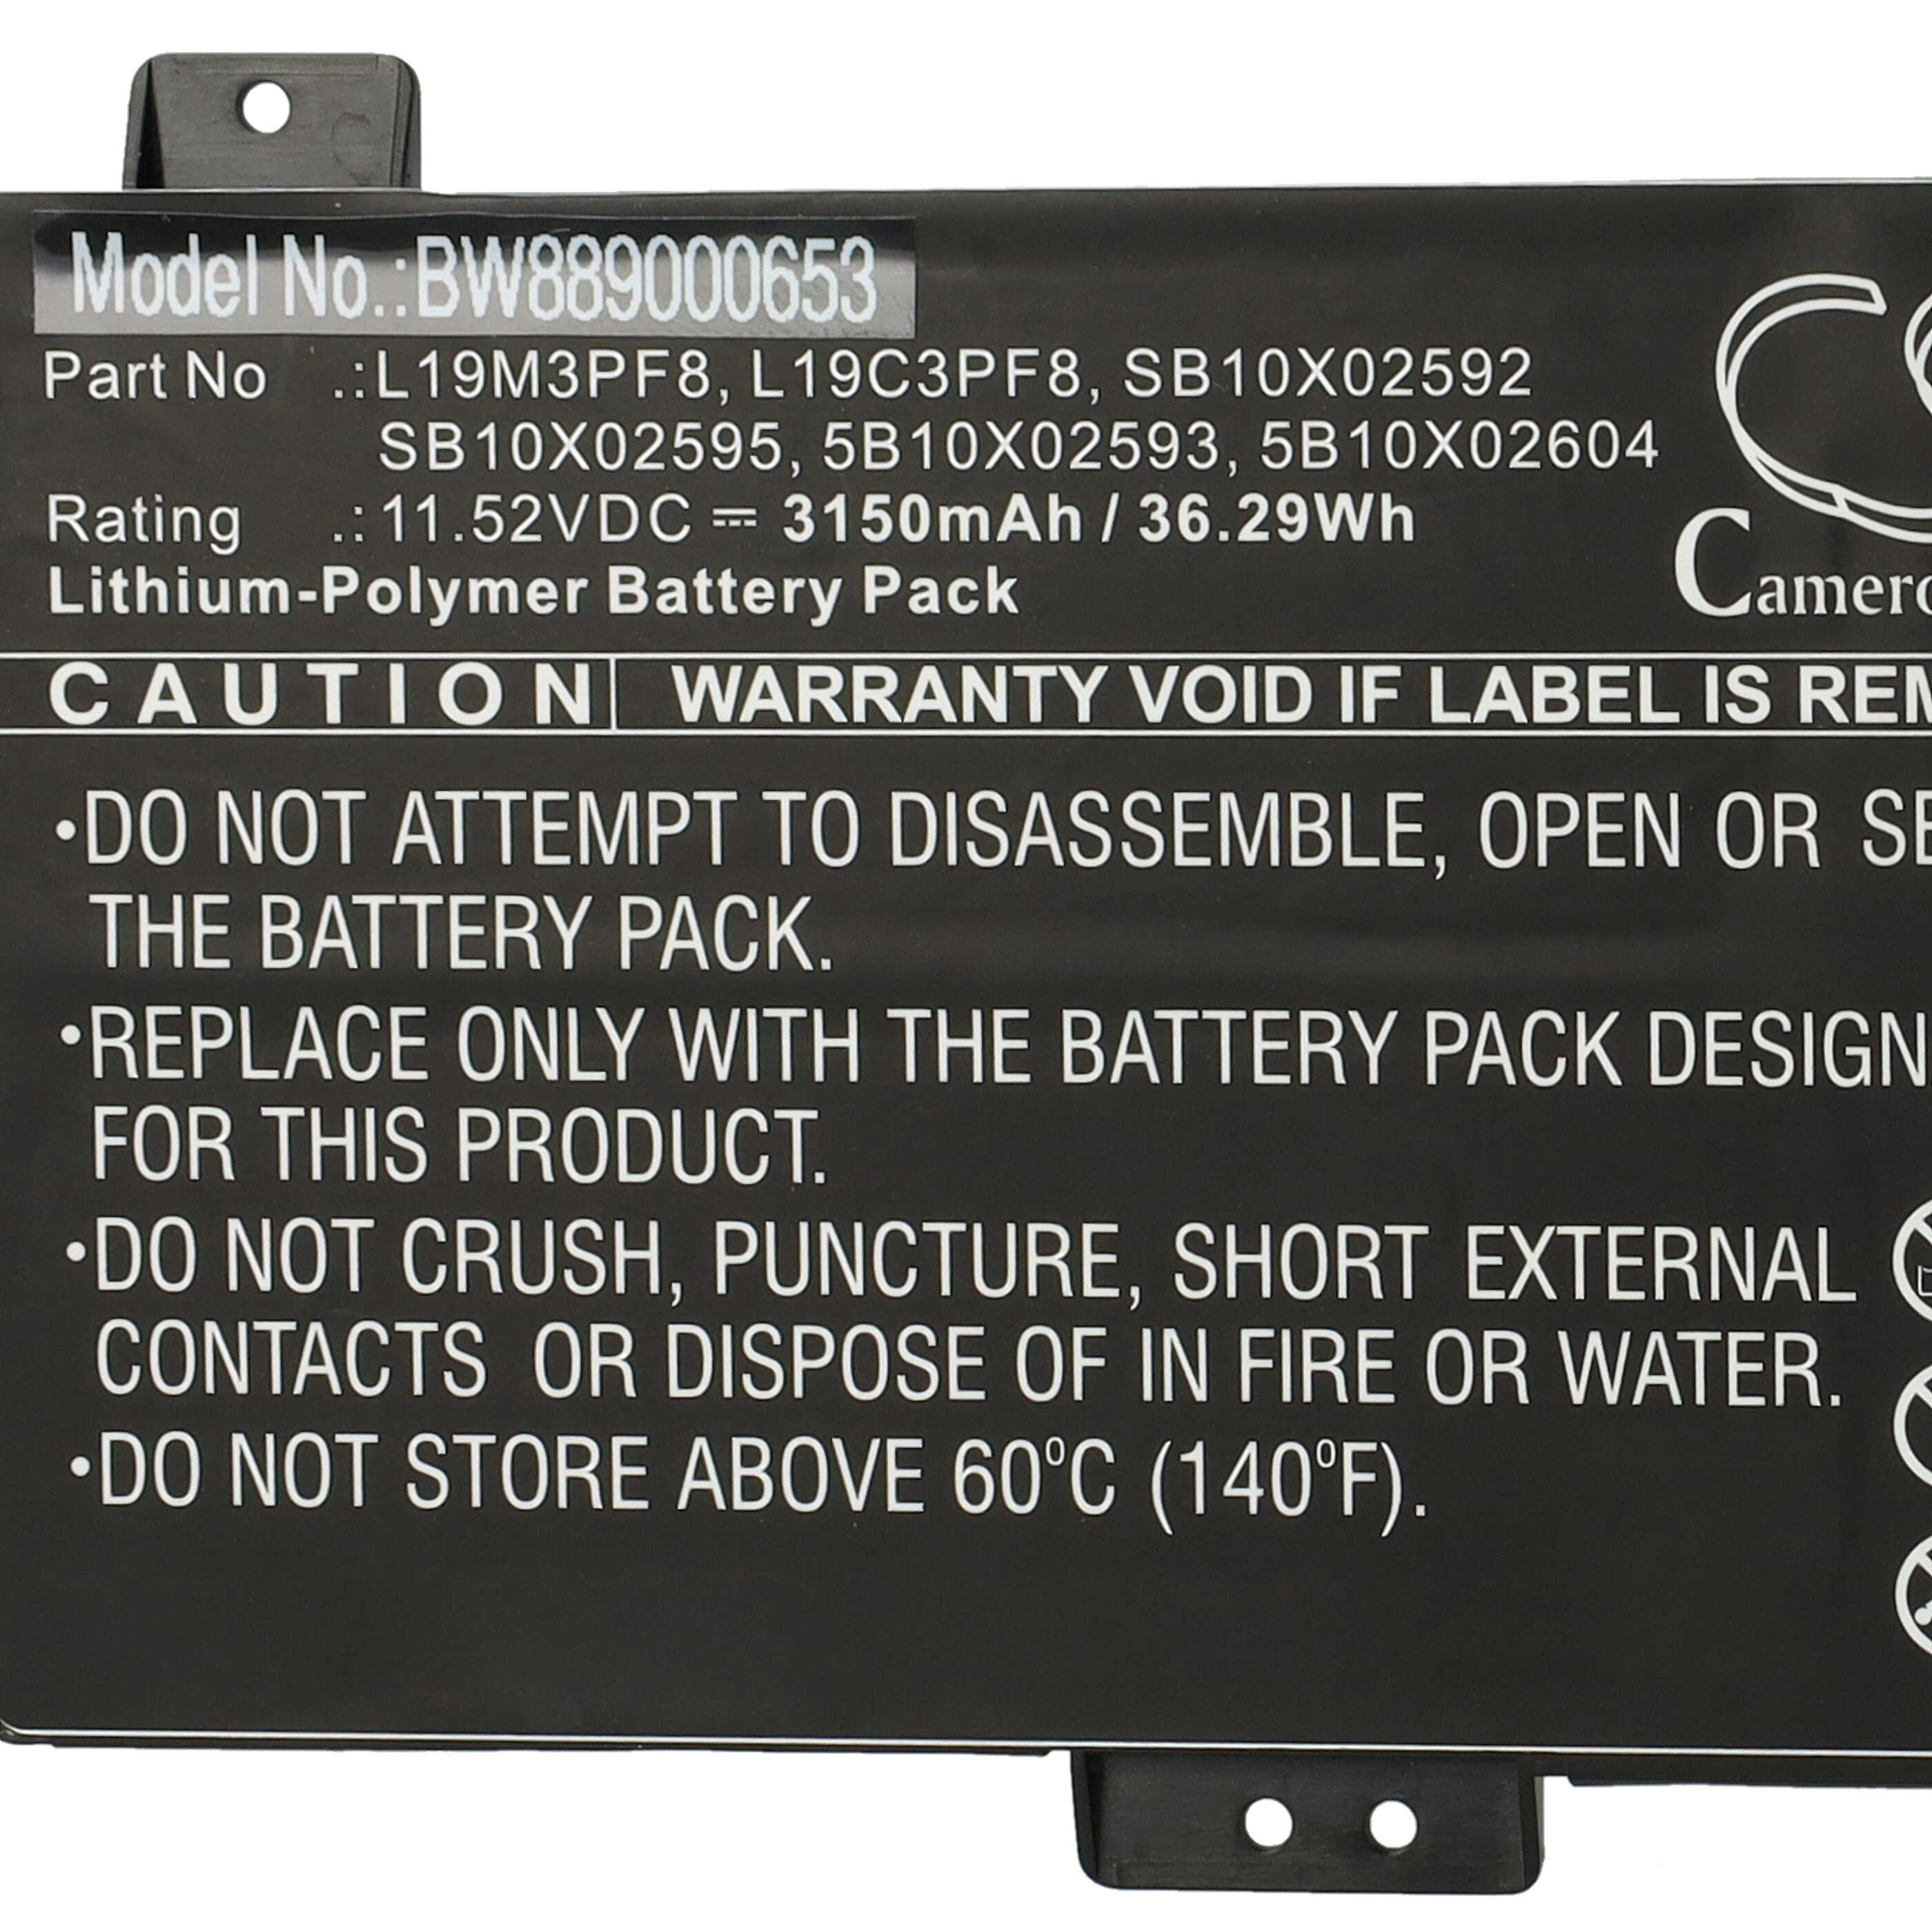 Notebook Battery Replacement for Lenovo 5B10X02593, 5B10X02604, L19C3PF8, L19M3PF8 - 3150mAh 11.52V Li-polymer